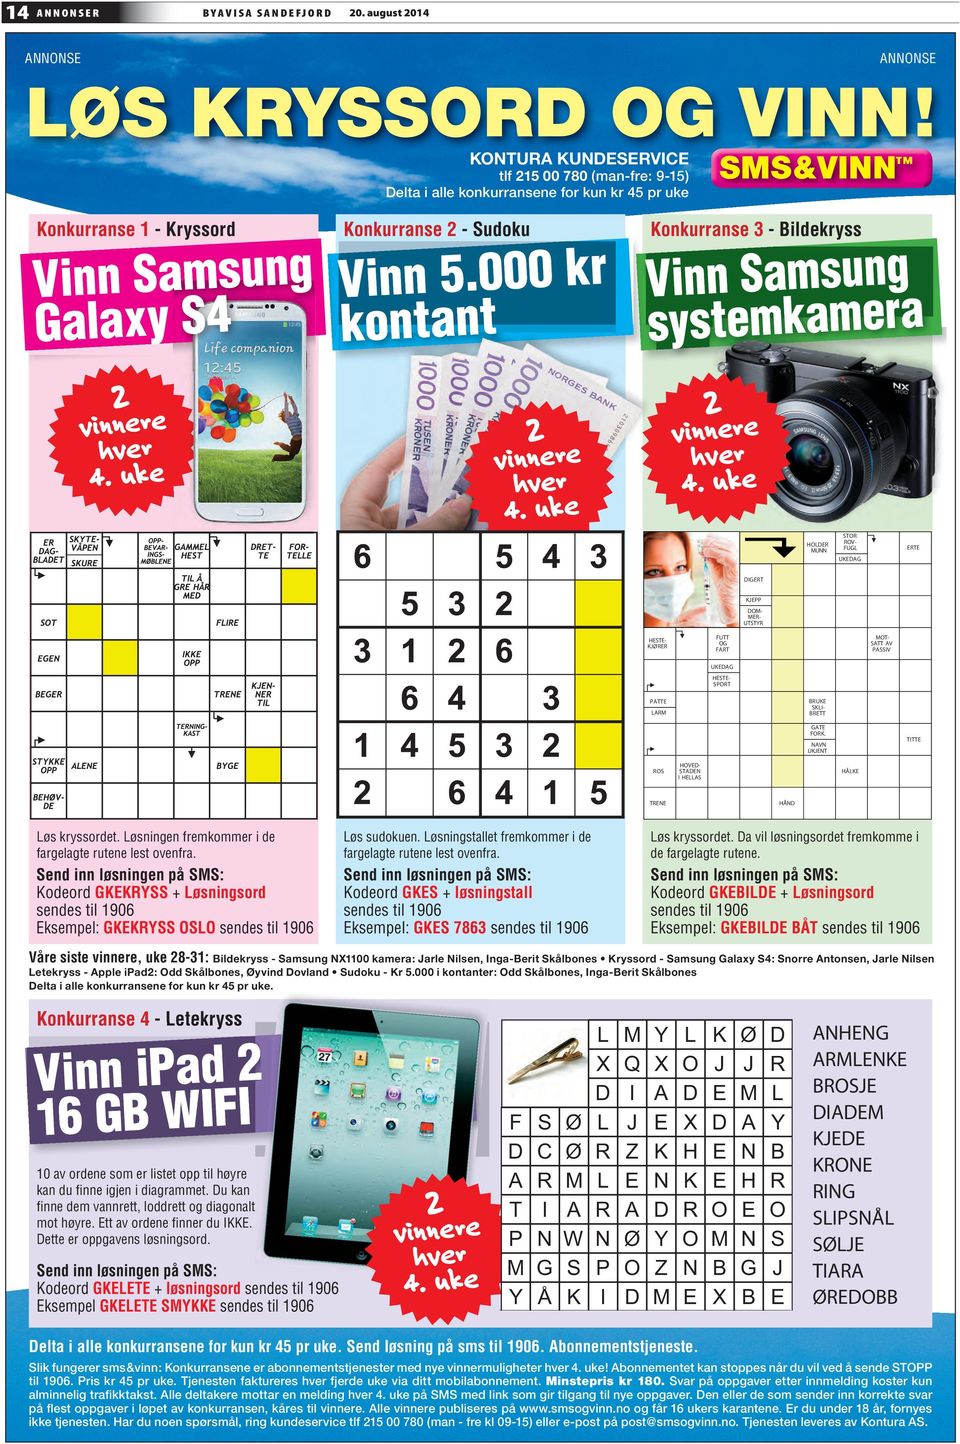 000 kr kontant Konkurranse 3 - Bildekryss Vinn Samsung systemkamera 2 vinnere hver 4. uke 2 vinnere hver 4.